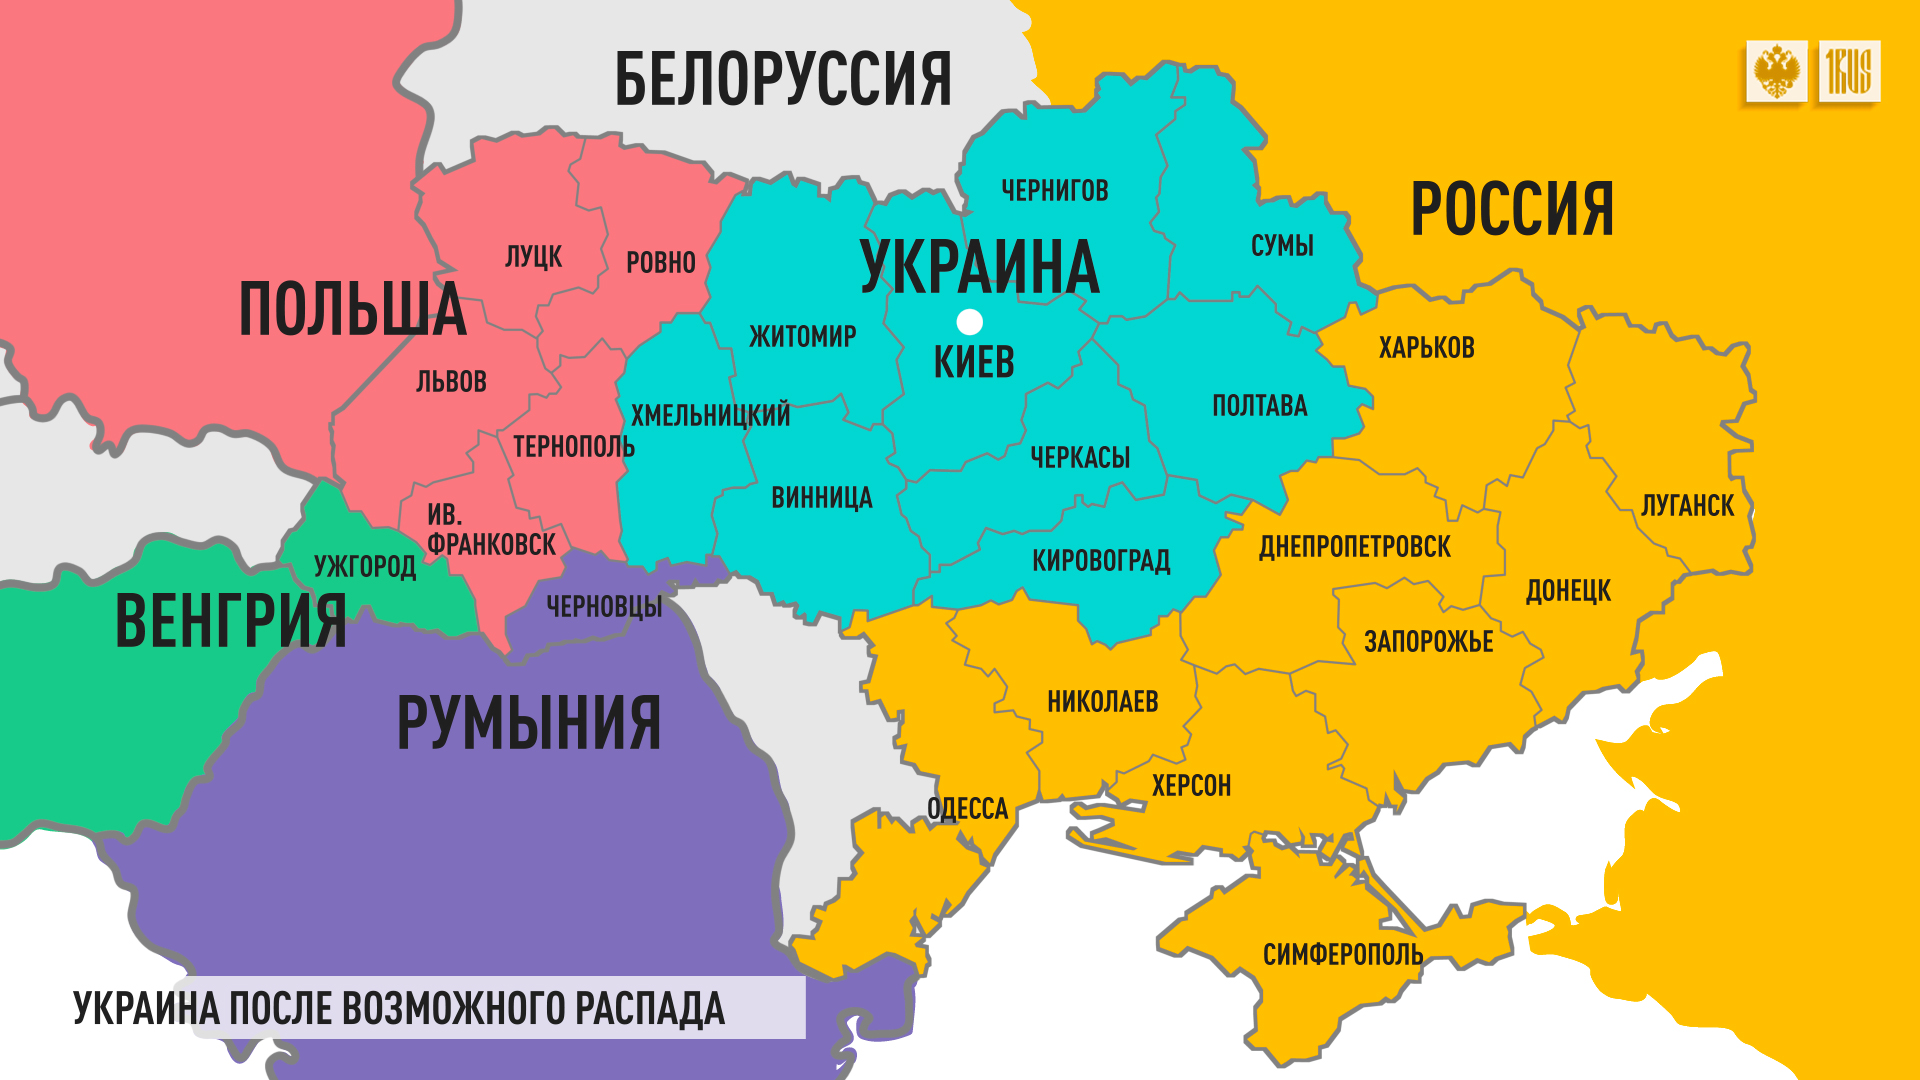 Карта украины с областями и городами на русском языке 2022г